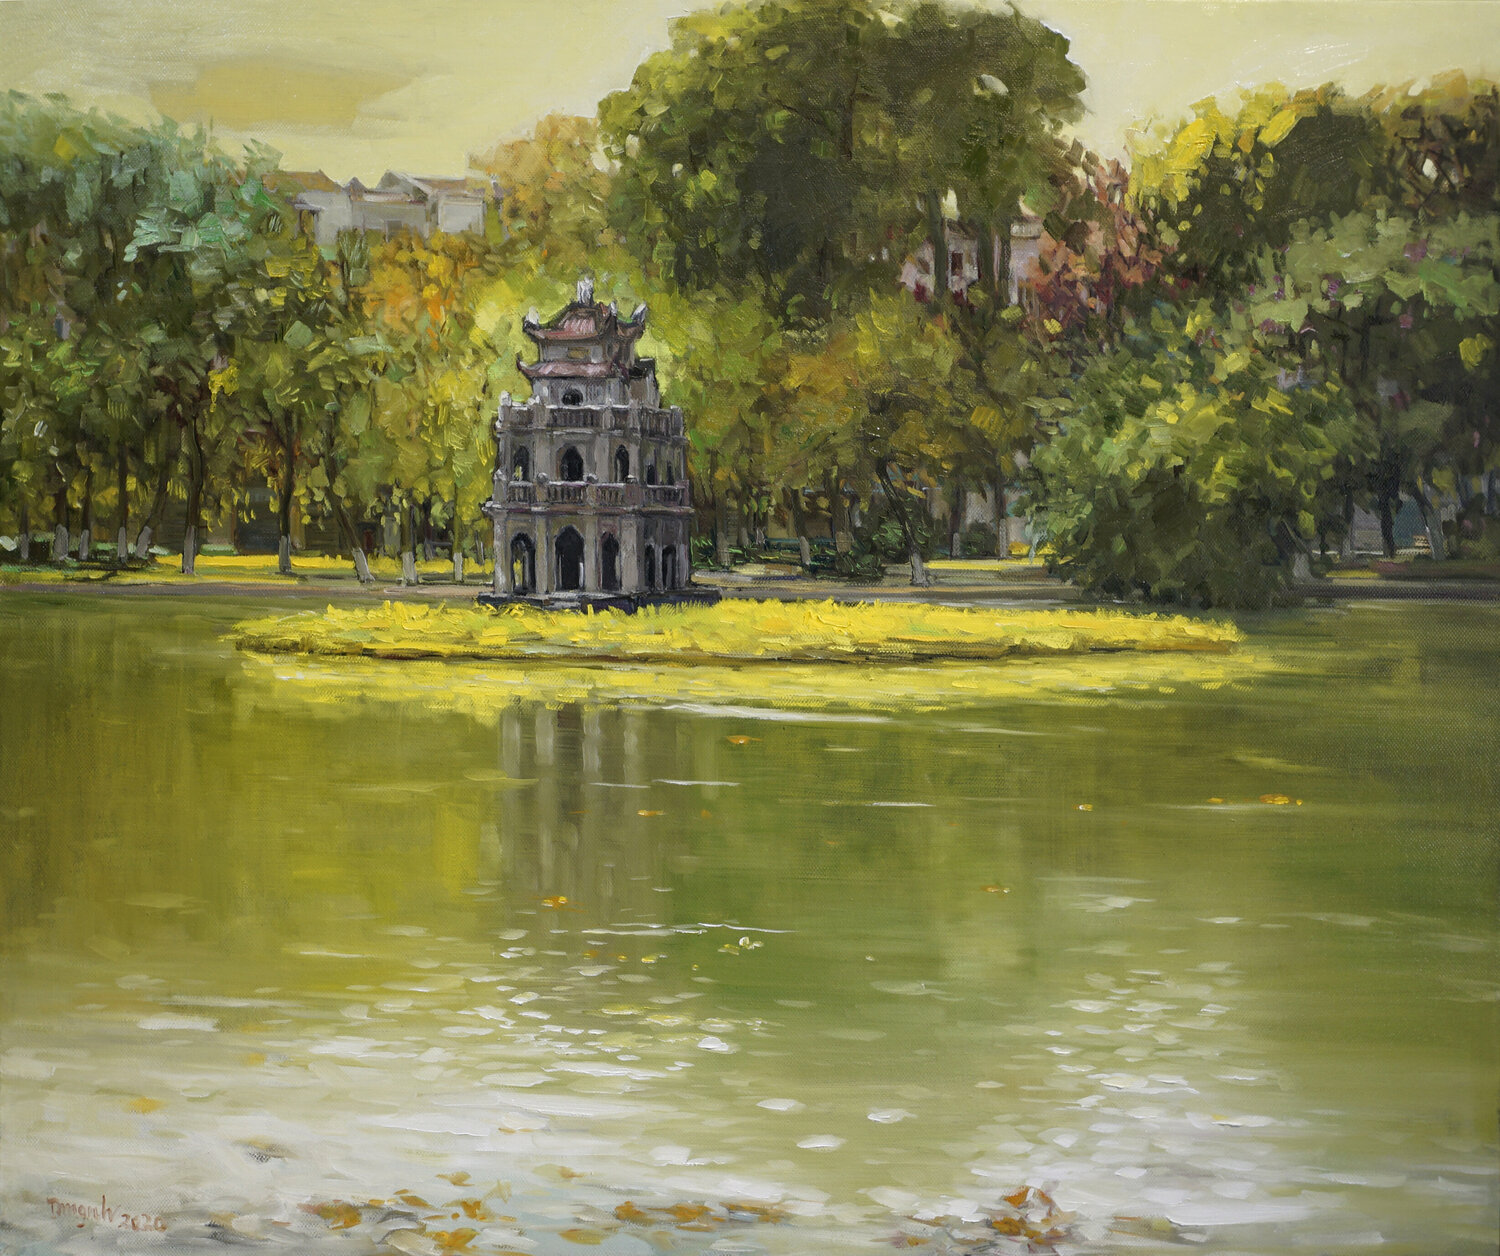 Hồ Hoàn Kiếm - vẽ cây lá vàng: Một trong những cảnh đẹp nhất của Hà Nội chính là Hồ Hoàn Kiếm, nơi được coi là trái tim của thành phố. Và vẽ cây lá vàng tại đây chắc chắn sẽ thêm phần sinh động và lãng mạn. Một bức tranh đẹp về cây lá vàng sẽ giúp bạn lưu giữ kỷ niệm tuyệt vời này mãi mãi.